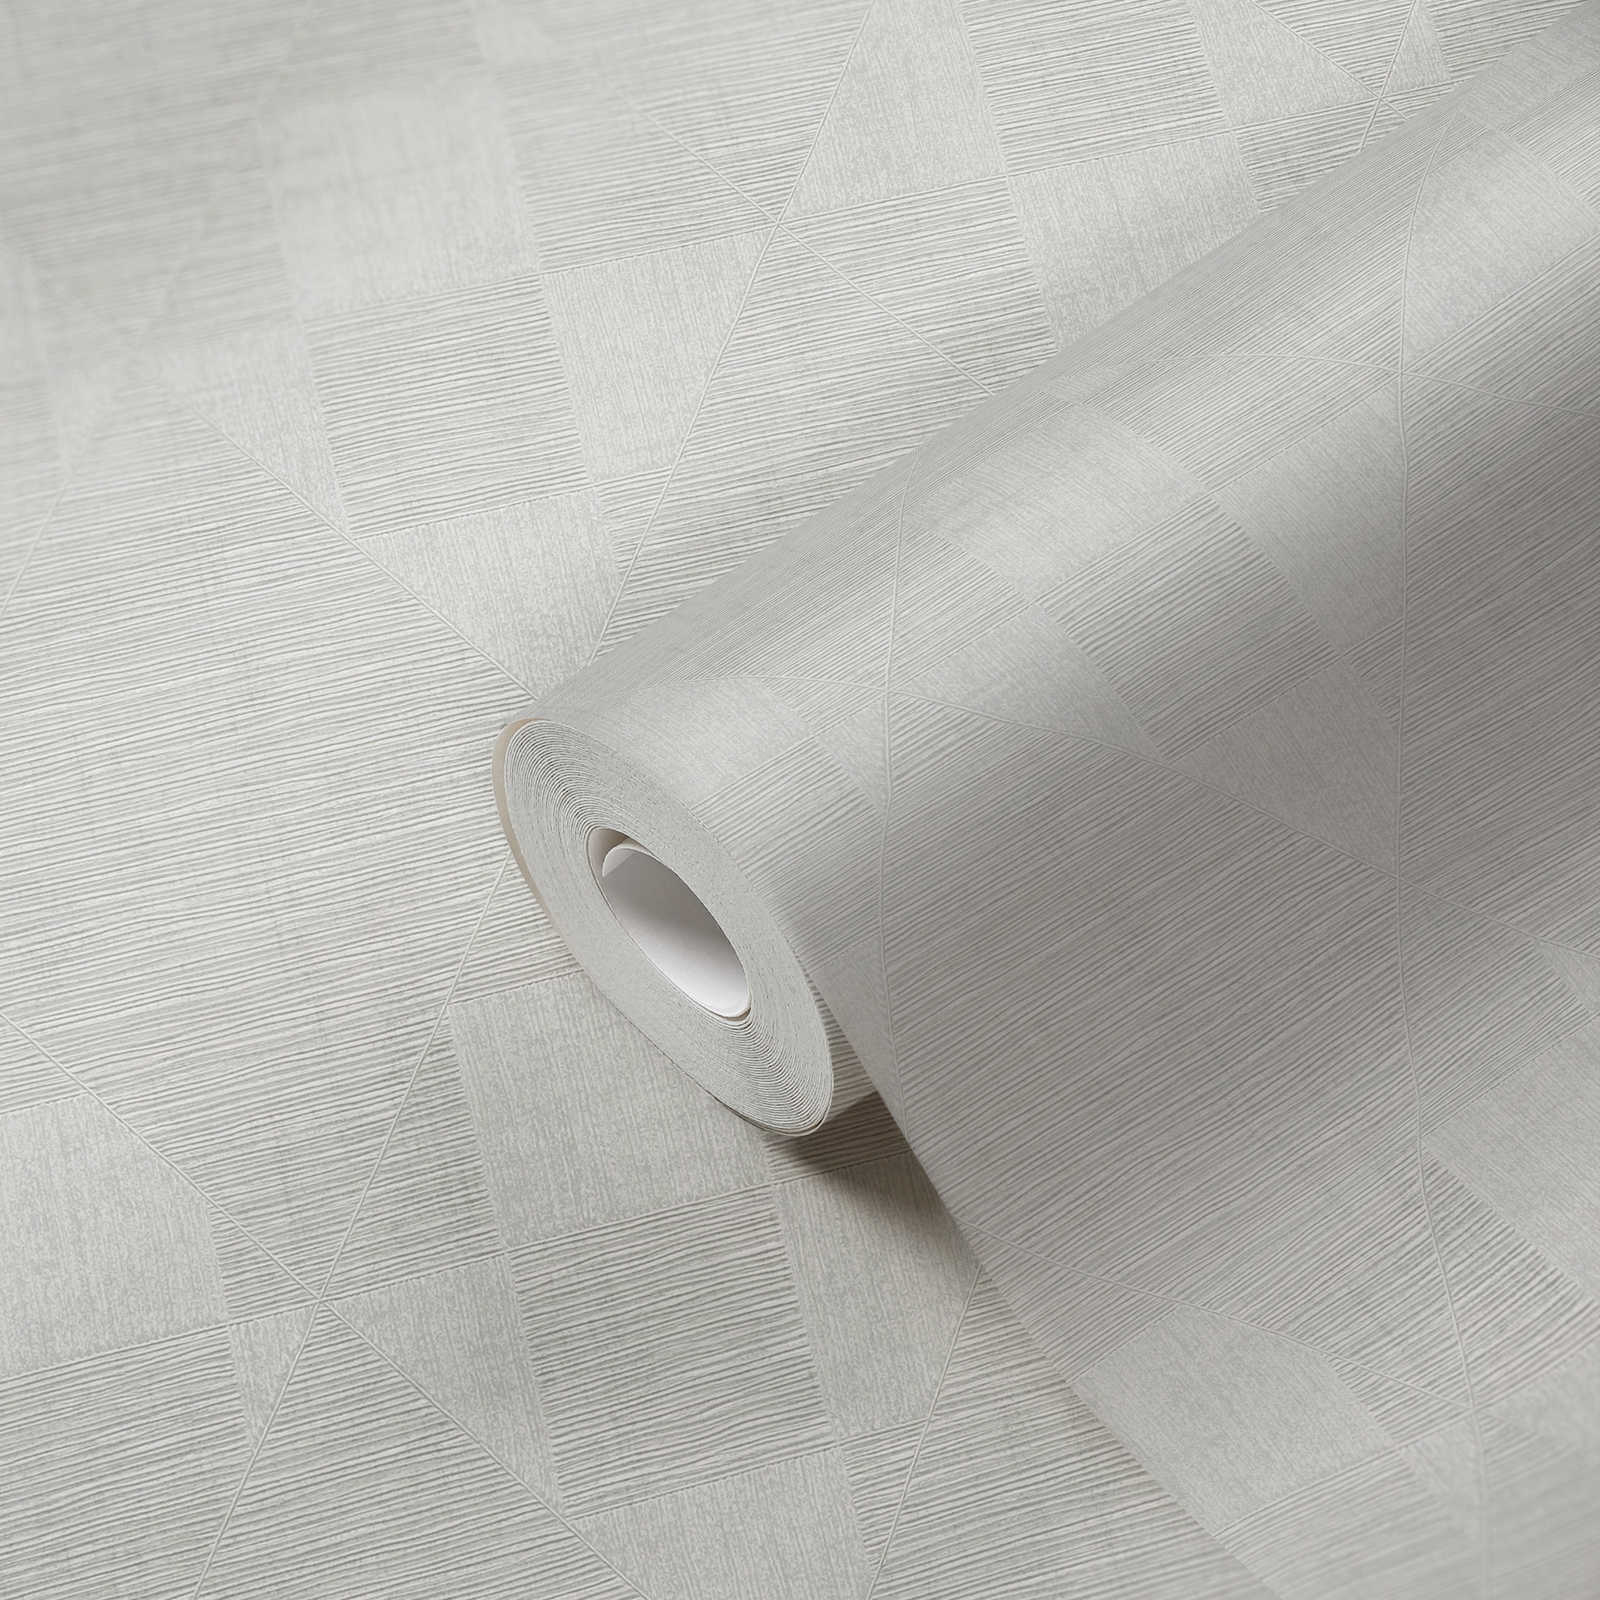             Retro Tapete mit Metallic Strukturdesign – Grau, Weiß
        